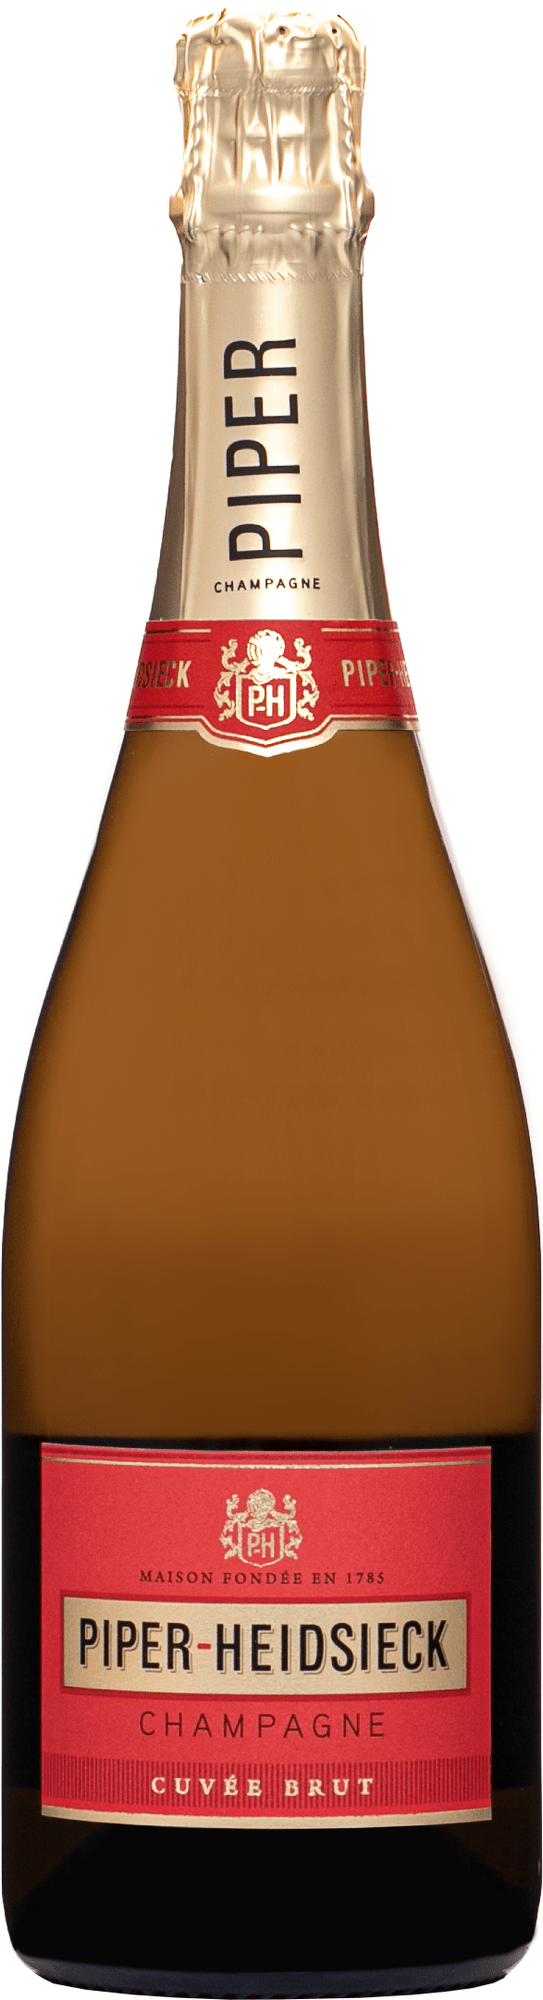 Piper Heidsieck Champagne Brut 0,75 l